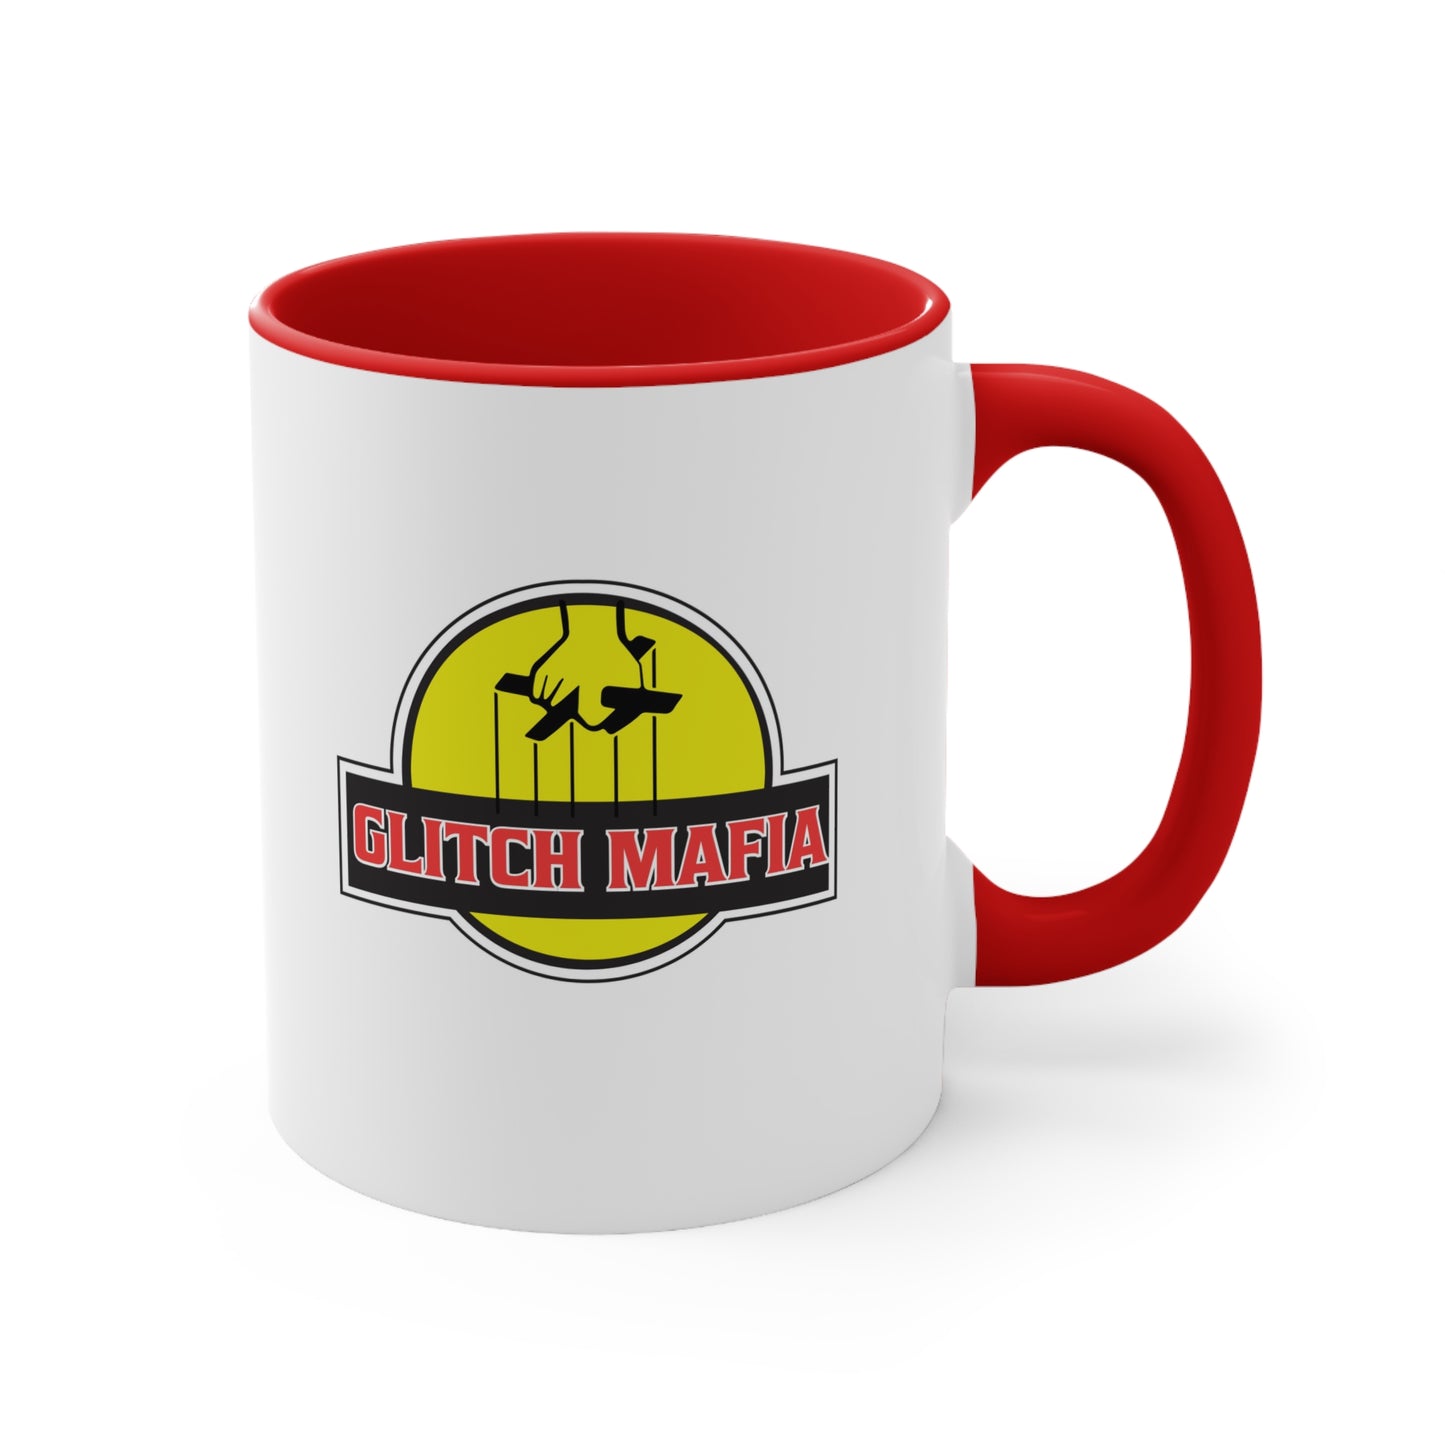 Glitch Mafia Coffee Mug, 11oz